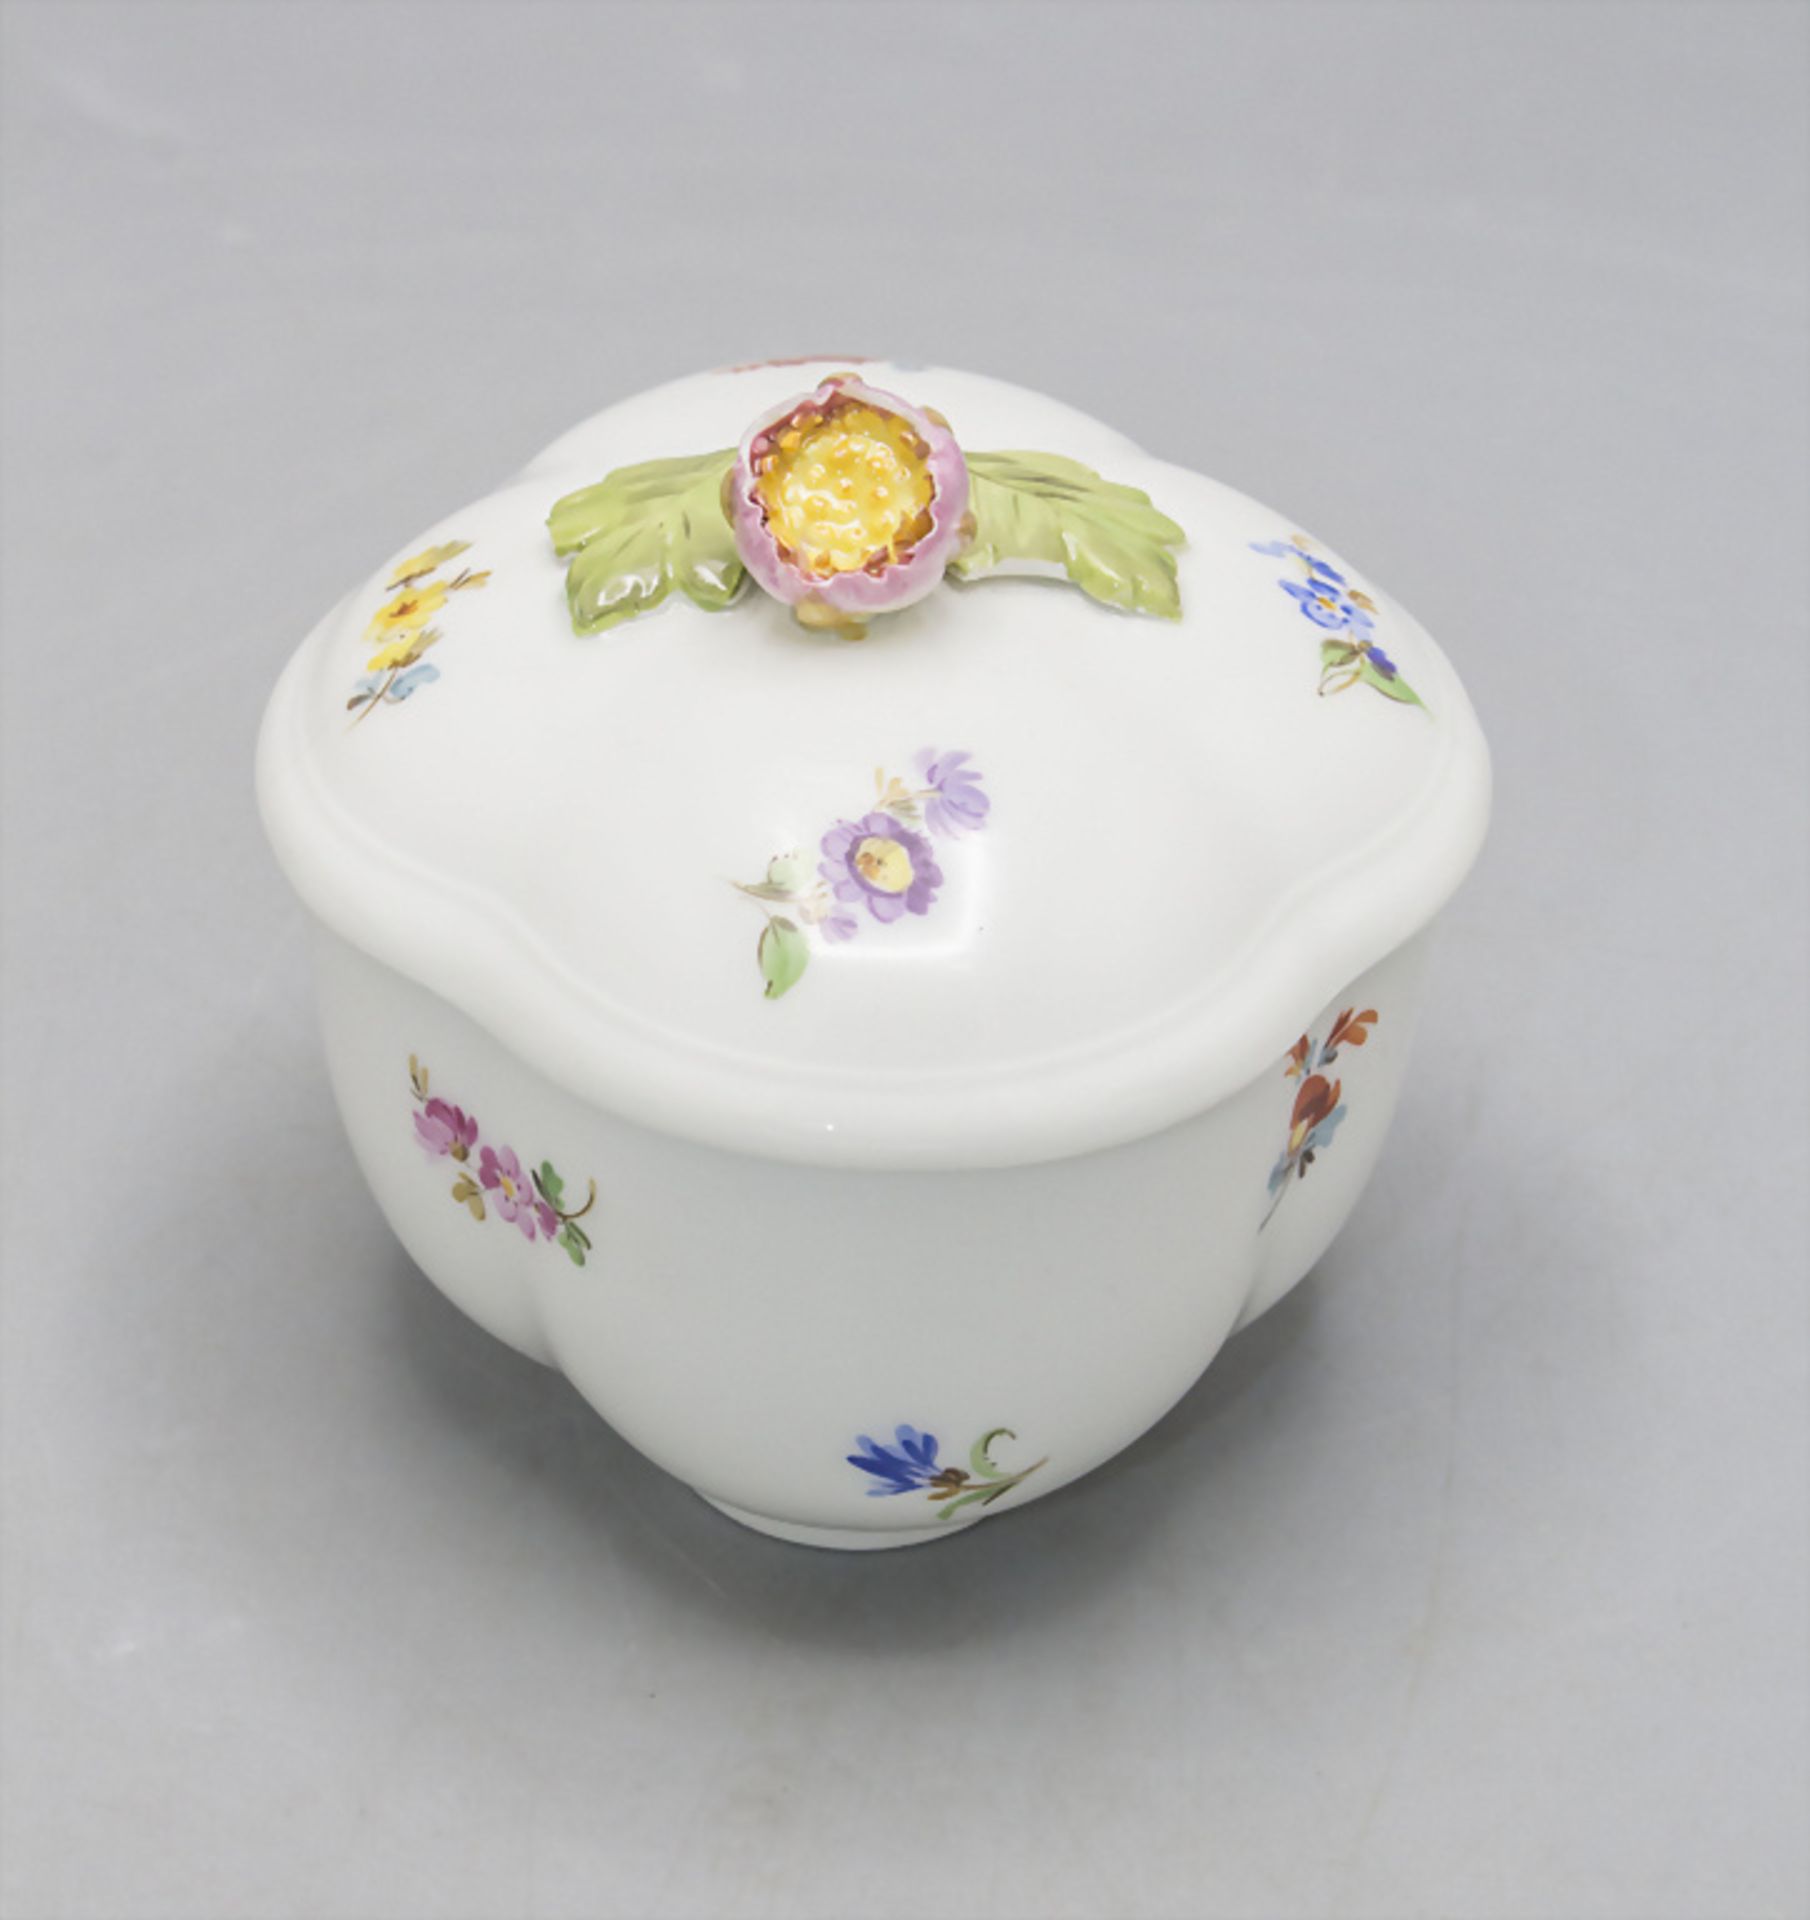 Zuckerdose mit einer Aster / A sugar bowl with an aster, Meissen, um 1880 - Image 2 of 5